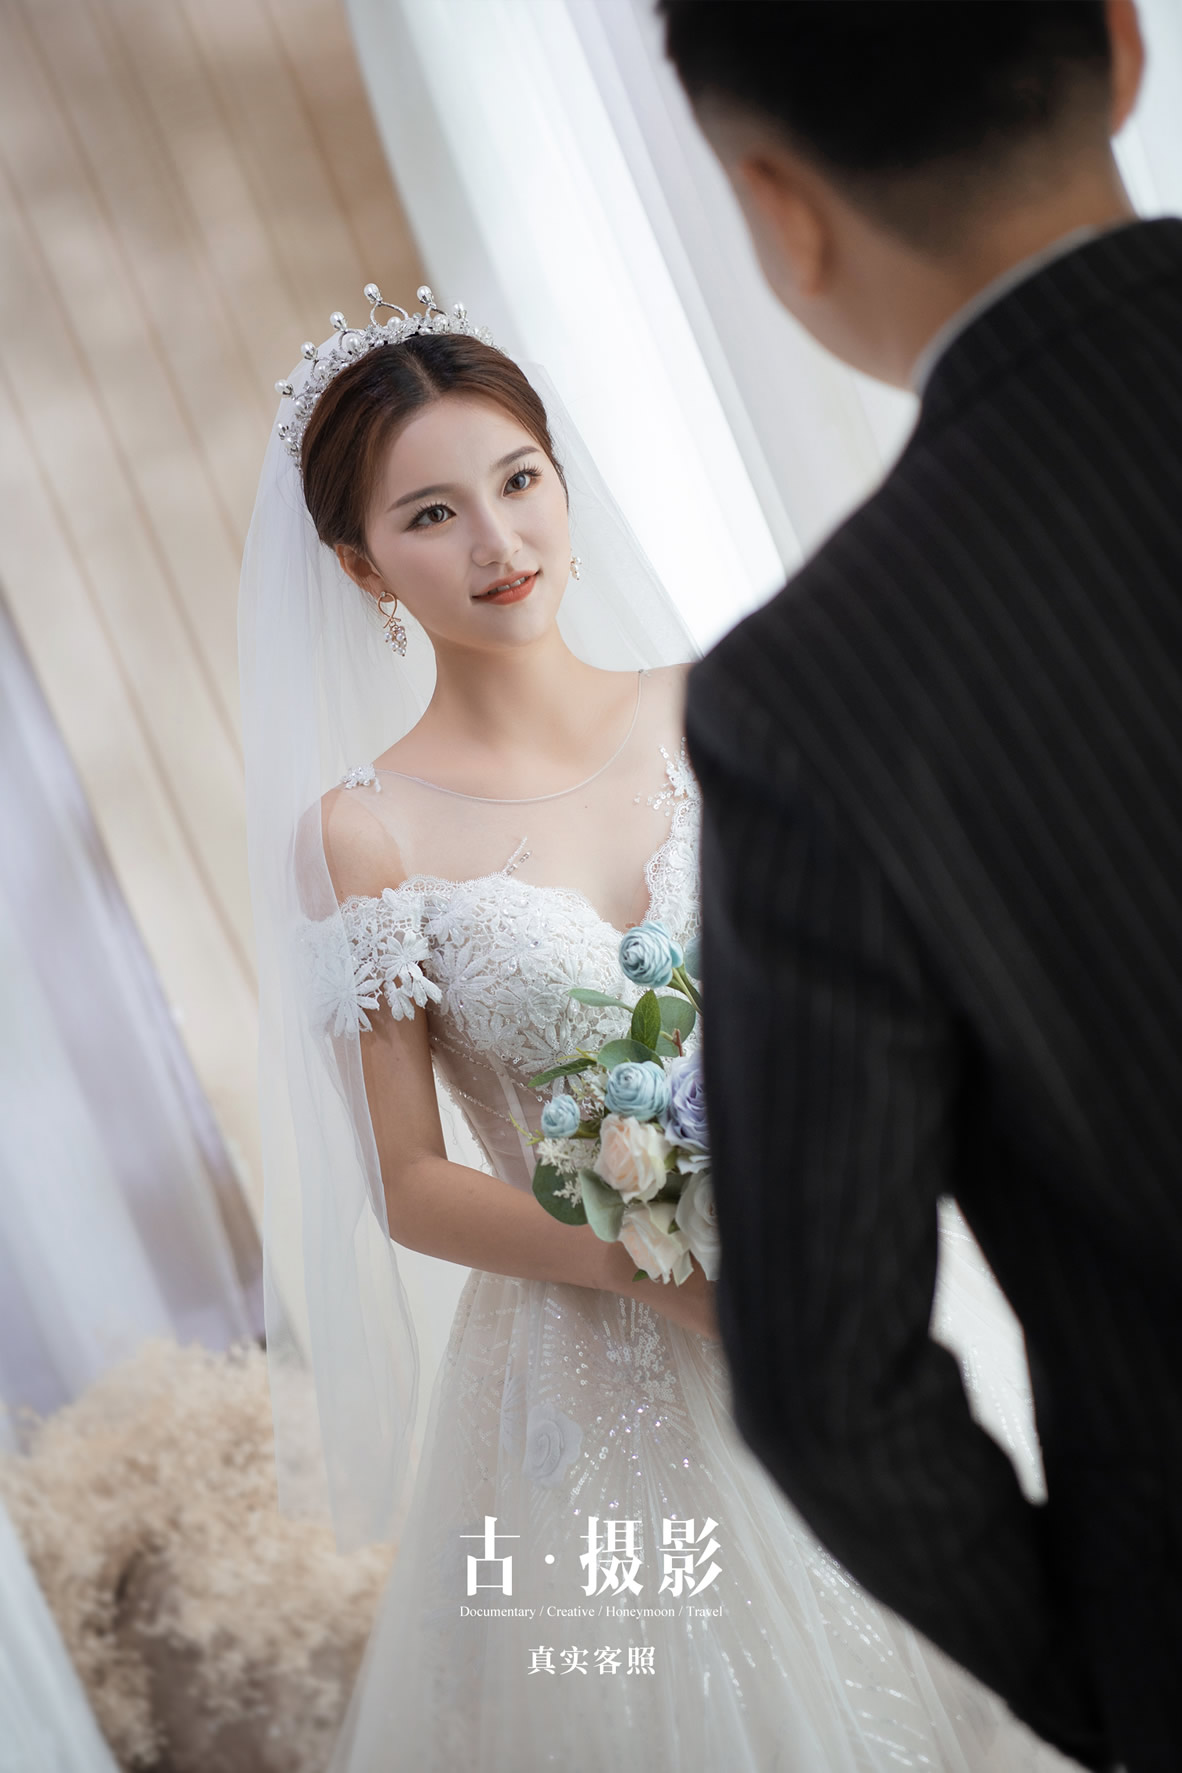 李先生 陈小姐 - 每日客照 - 古摄影婚纱艺术-古摄影成都婚纱摄影艺术摄影网